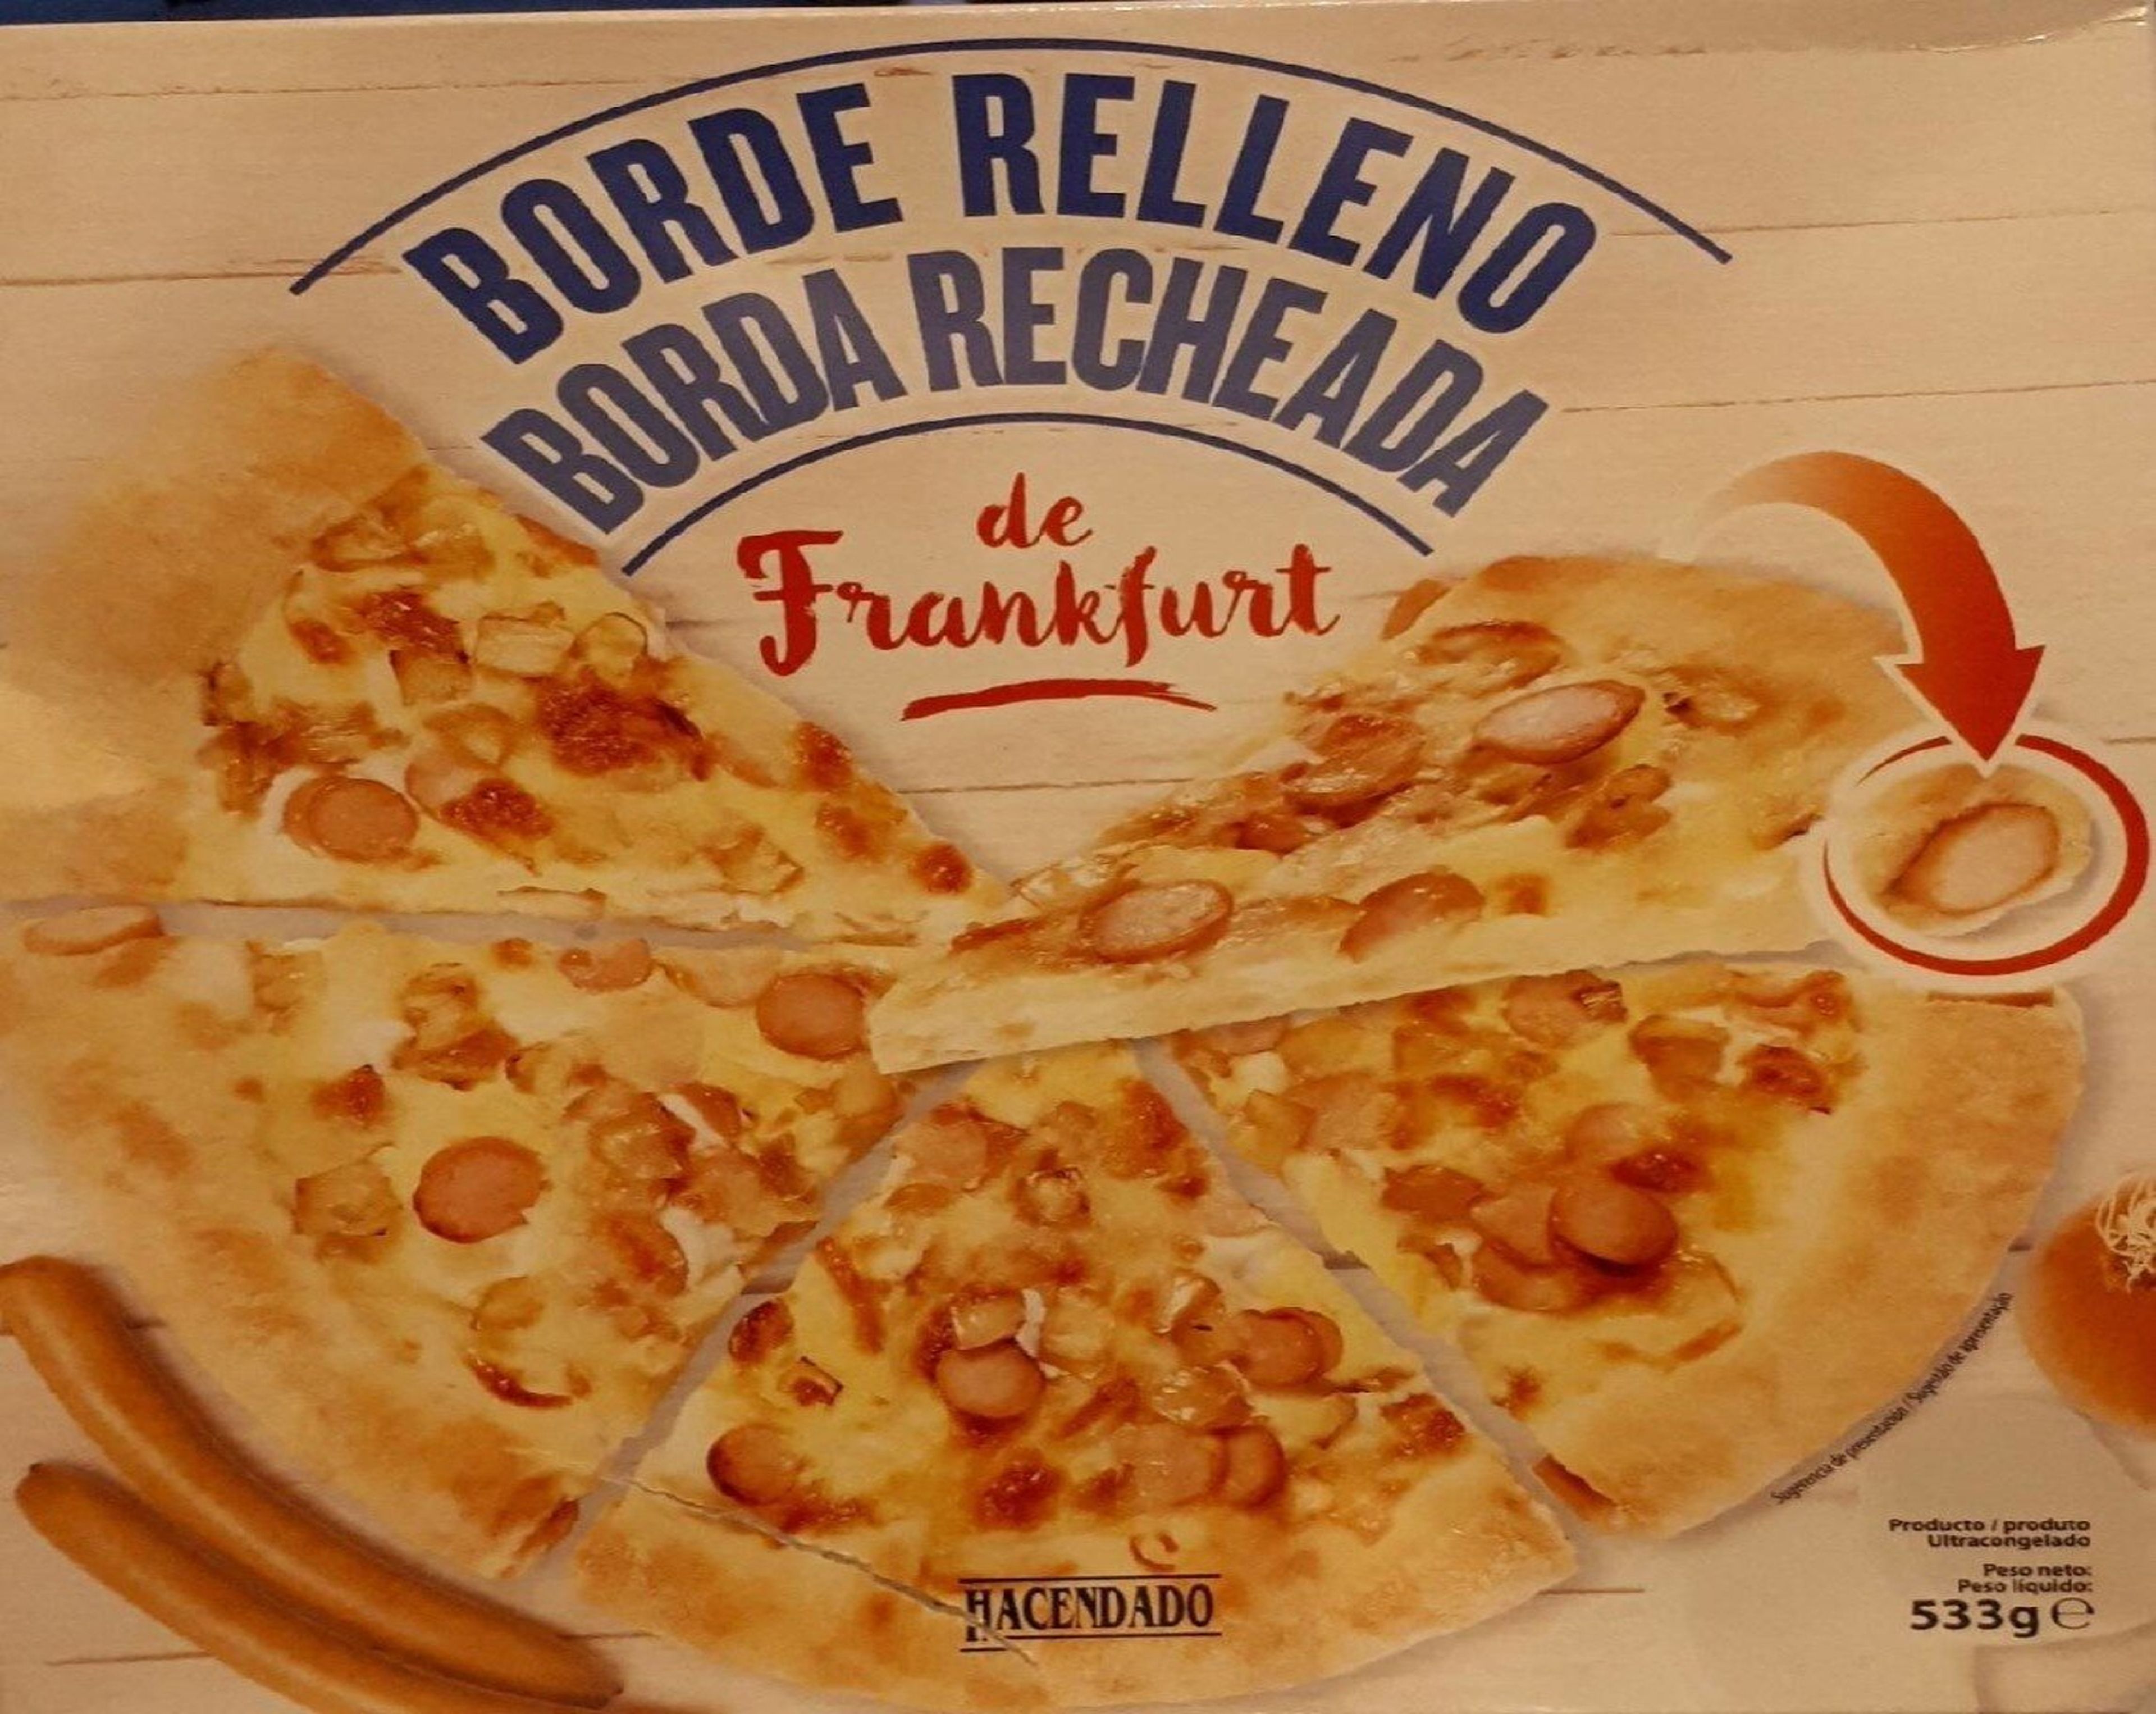 Pizza de Frankfurt con borde rellano